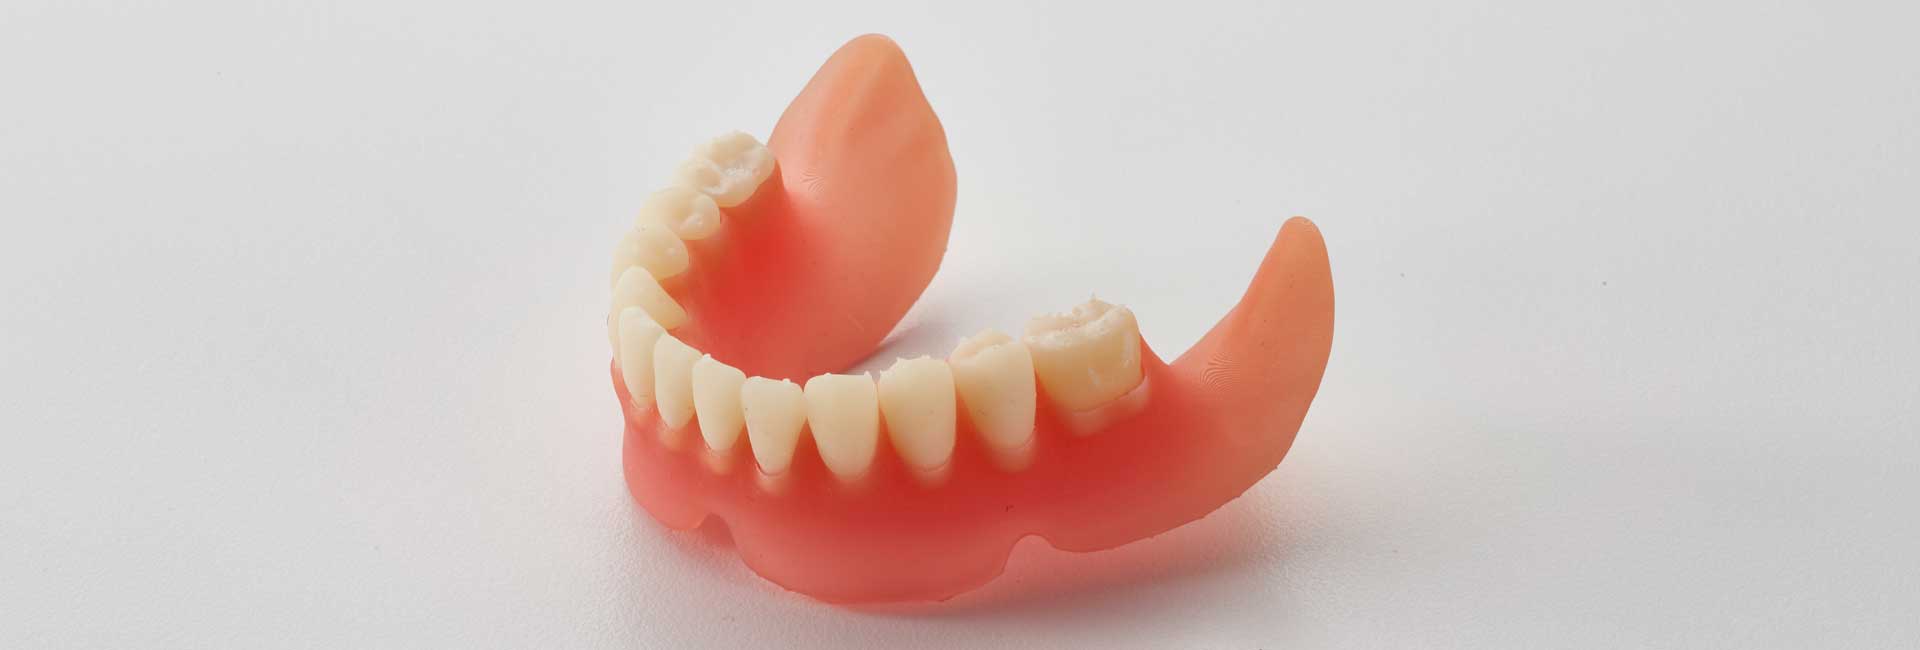 Models for orthodontics